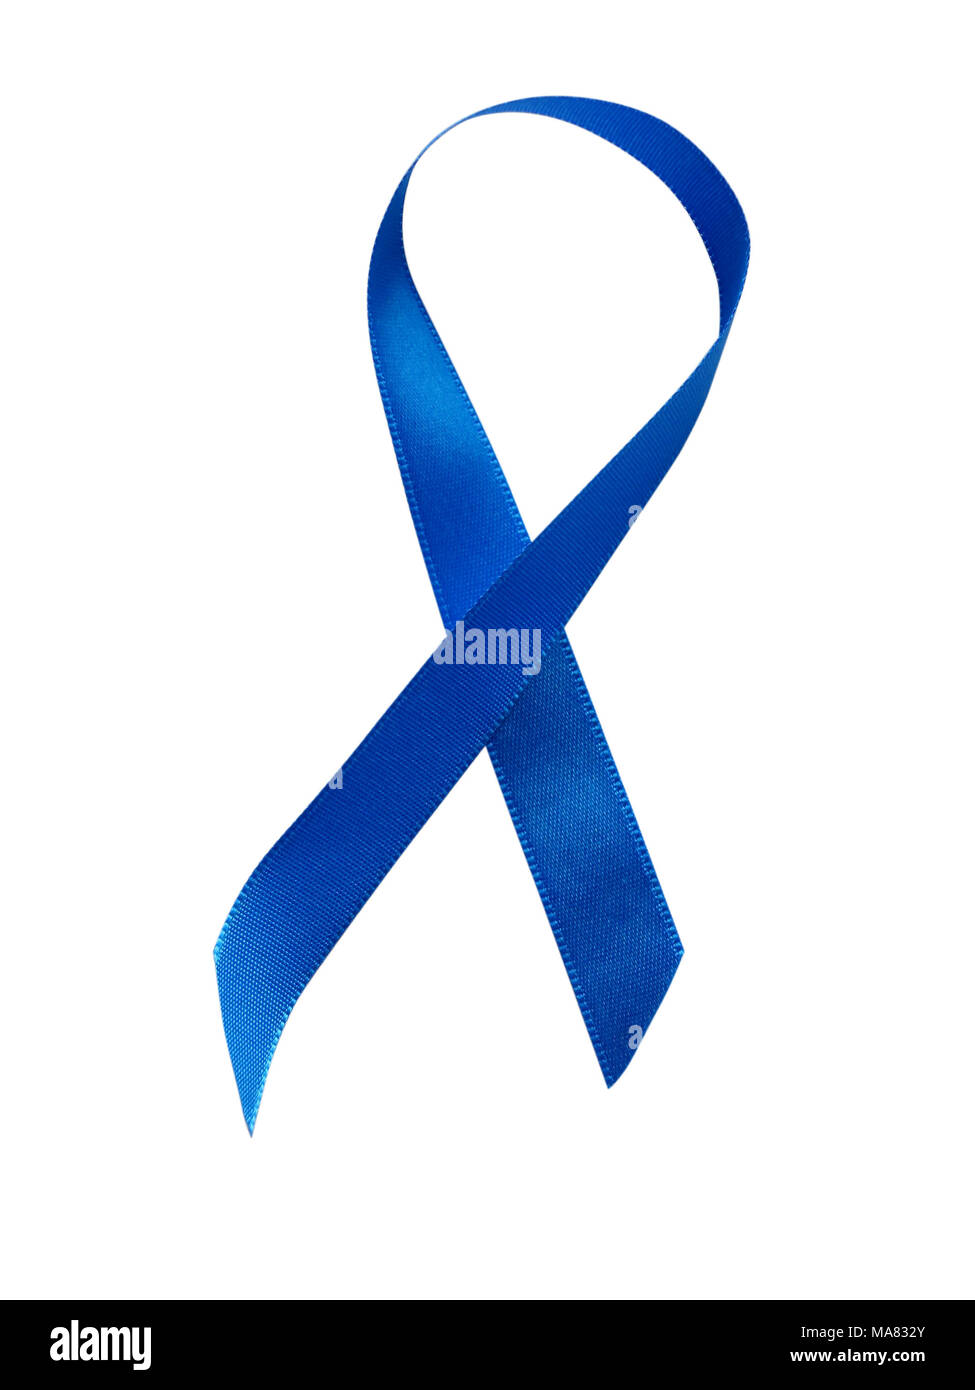 Blue Ribbon consapevolezza isolati su sfondo bianco. Percorso di clipping incluso Foto Stock